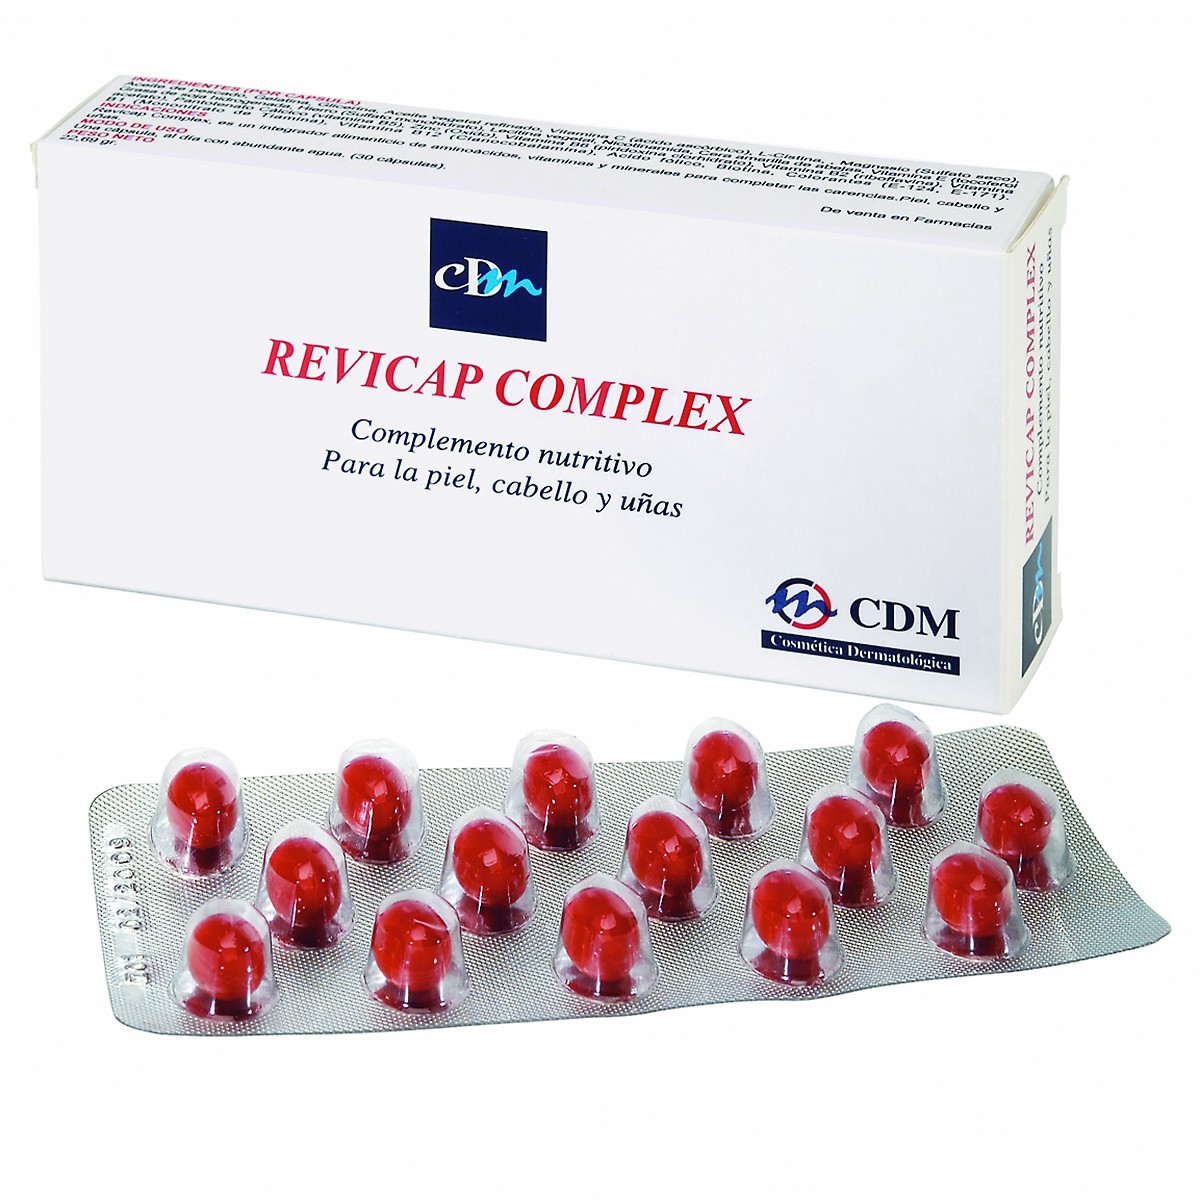 Imagen de Revicap complex 30 comprimidos